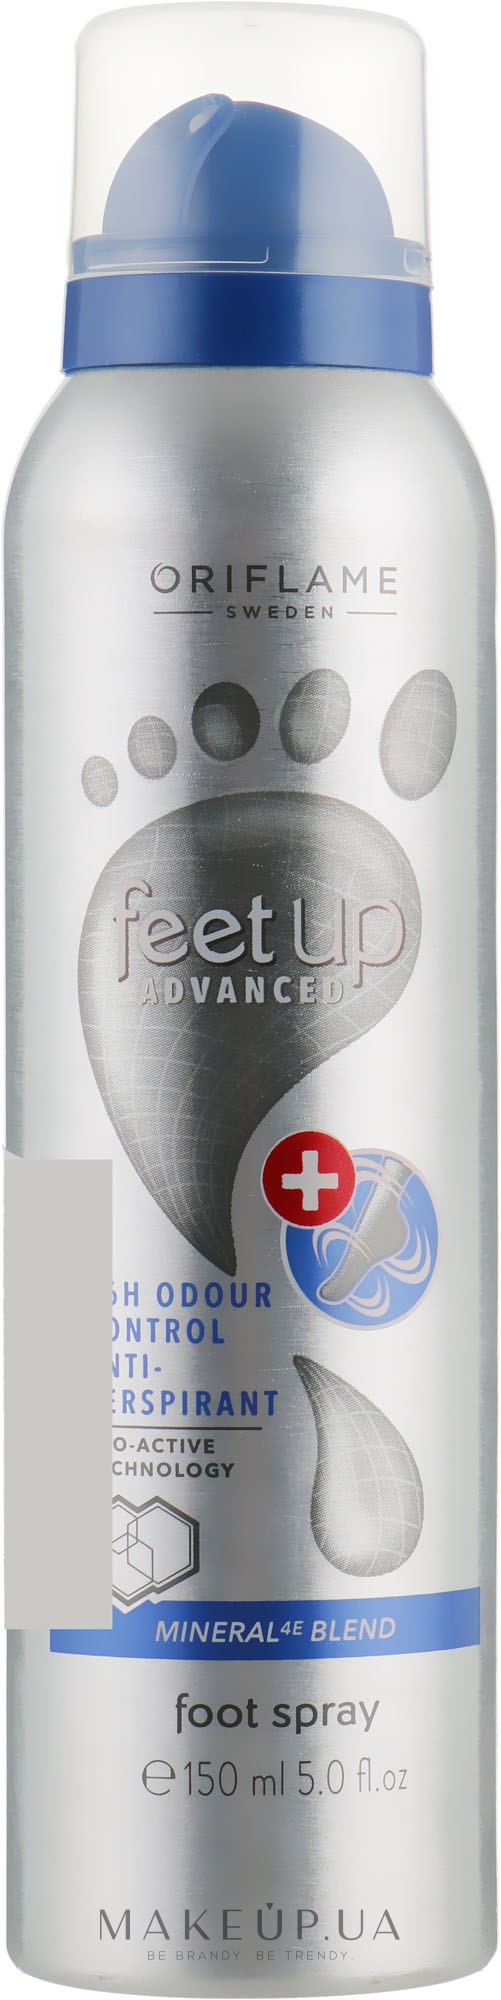 Дезодорант-антиперспирант для ног 36-часового действия - Oriflame Feet Up Advanced — фото 150ml